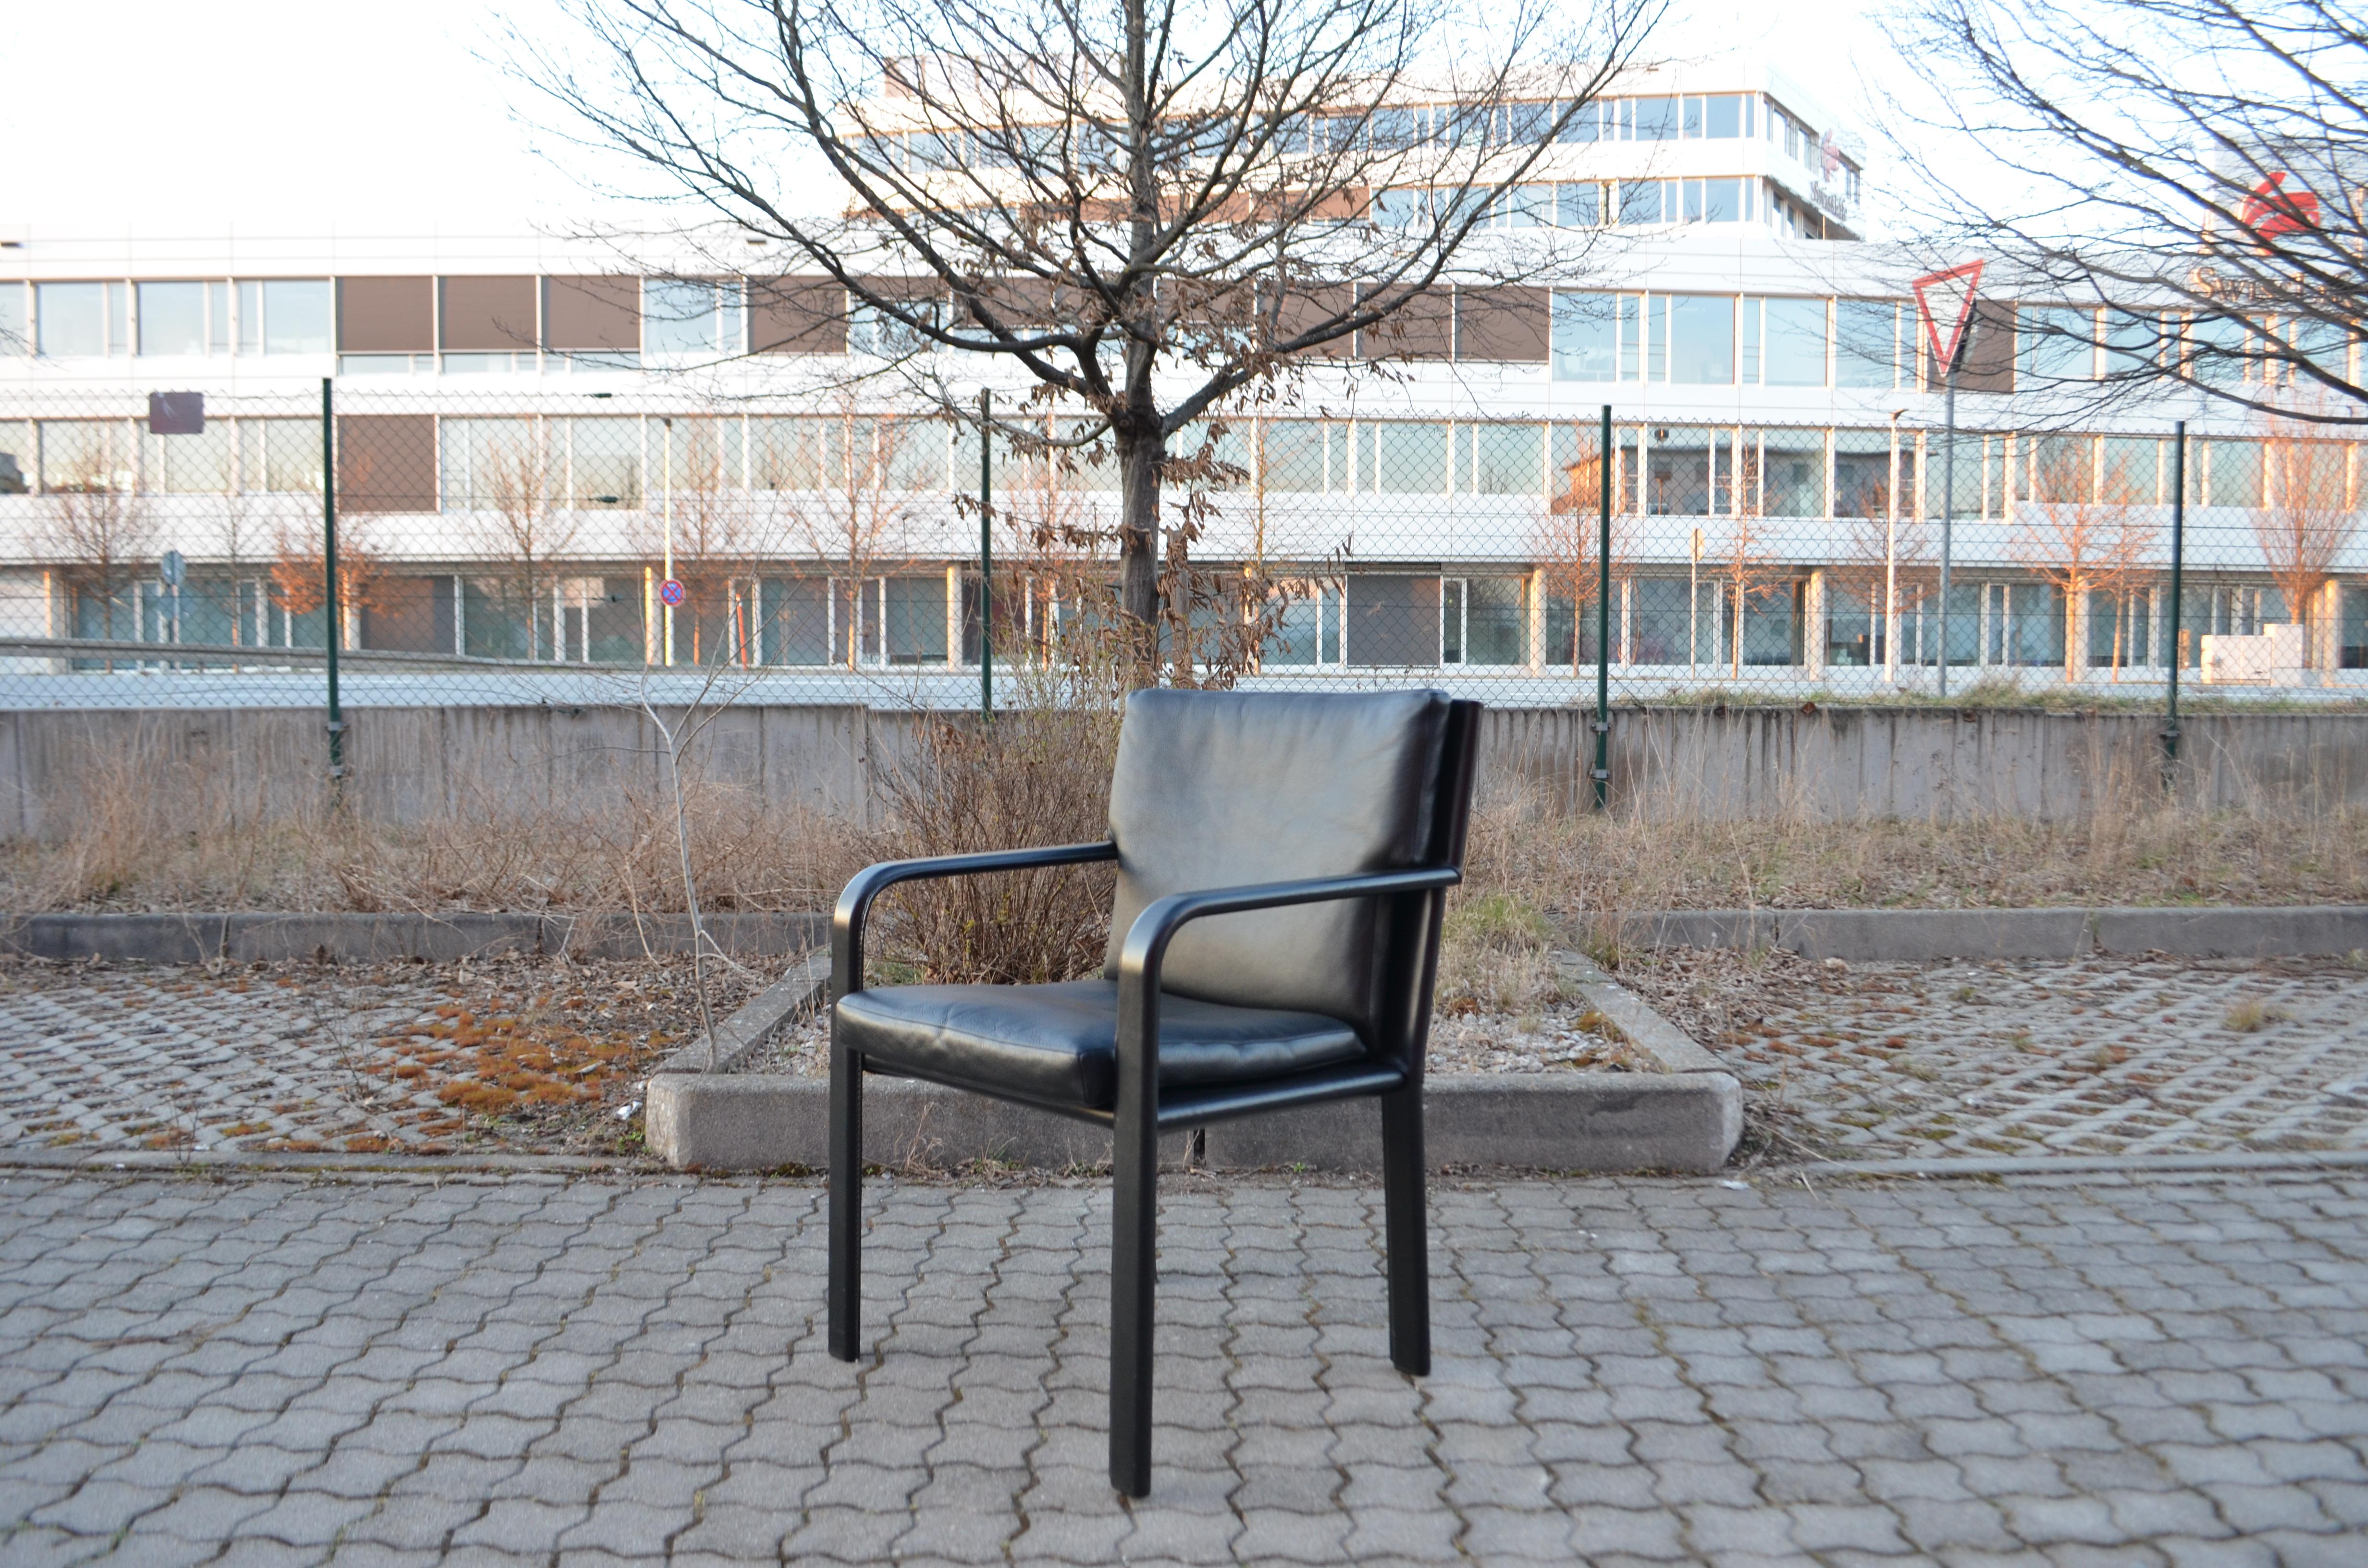 Jacques Toussaint und Patrizia Angeloni haben diesen Sessel für Matteo Grassi entworfen.
Es kann als Bürostuhl auch auf dem Esstisch verwendet werden.
Er ist aus schwarz lackiertem Aluminium und dickem Anilinleder und schwarzem Sattelleder